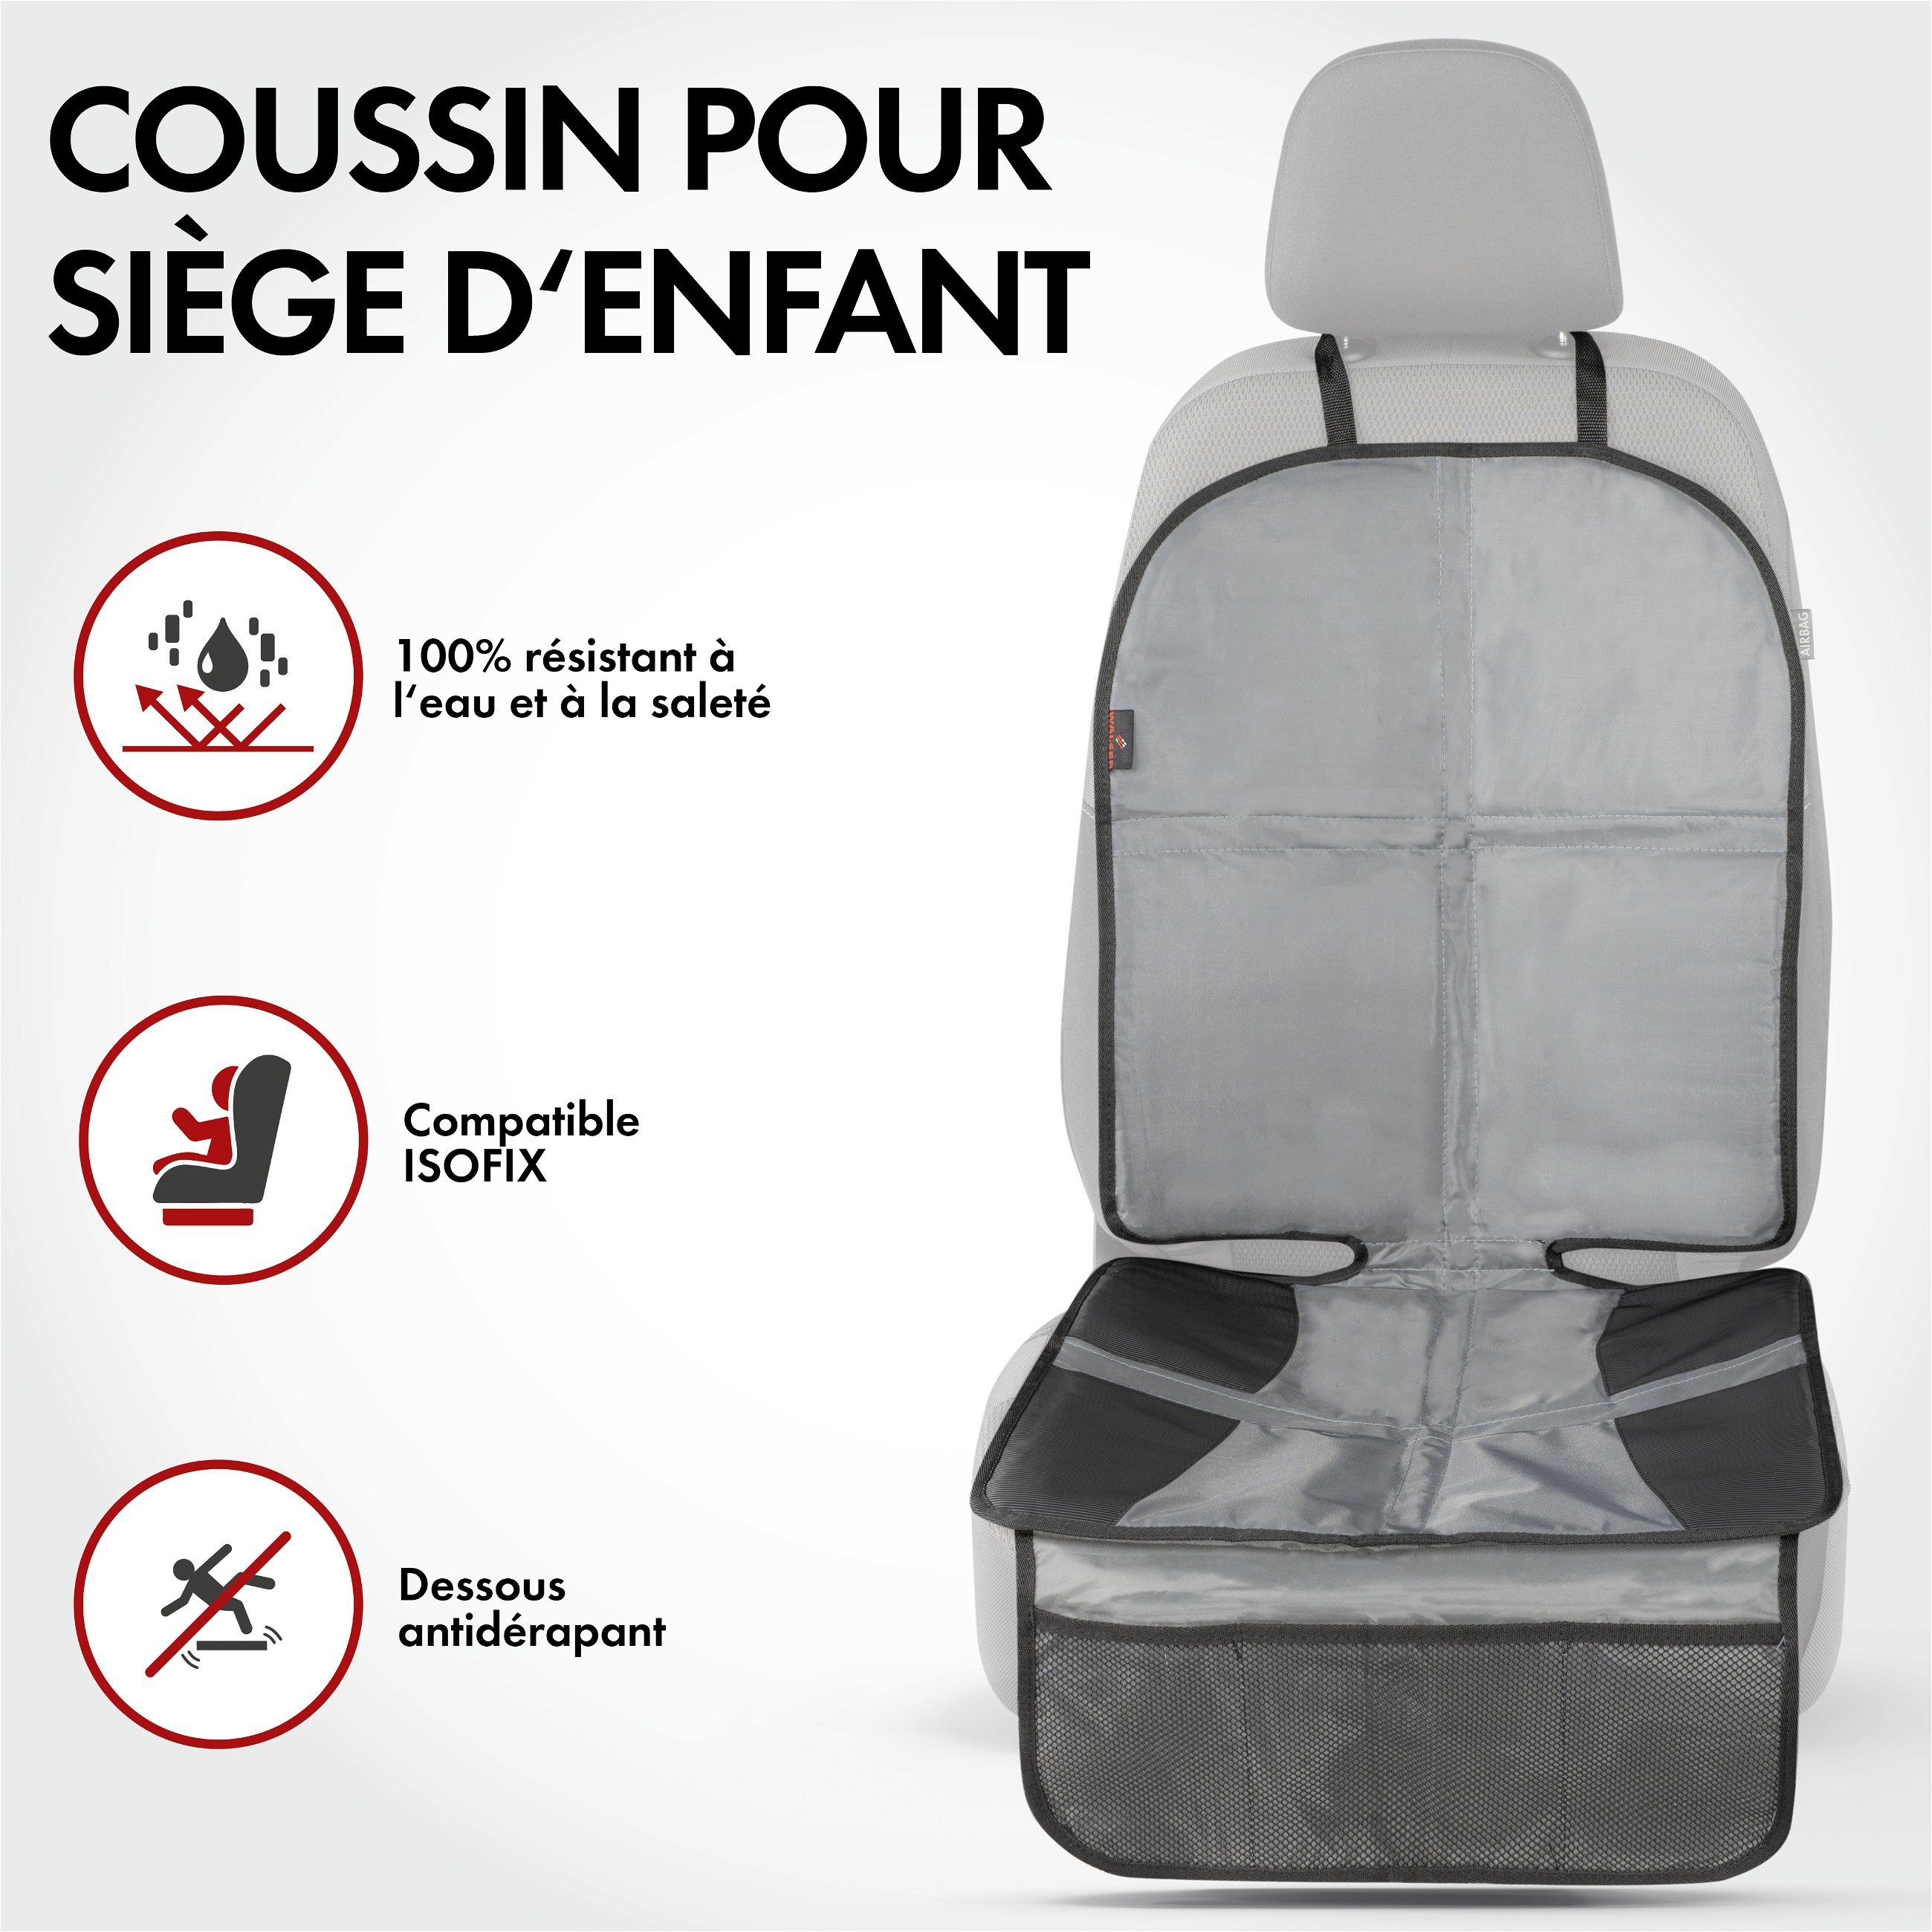 Coussin pour siège enfant Tidy Fred XL, tapis de protection pour siège enfant gris/noir